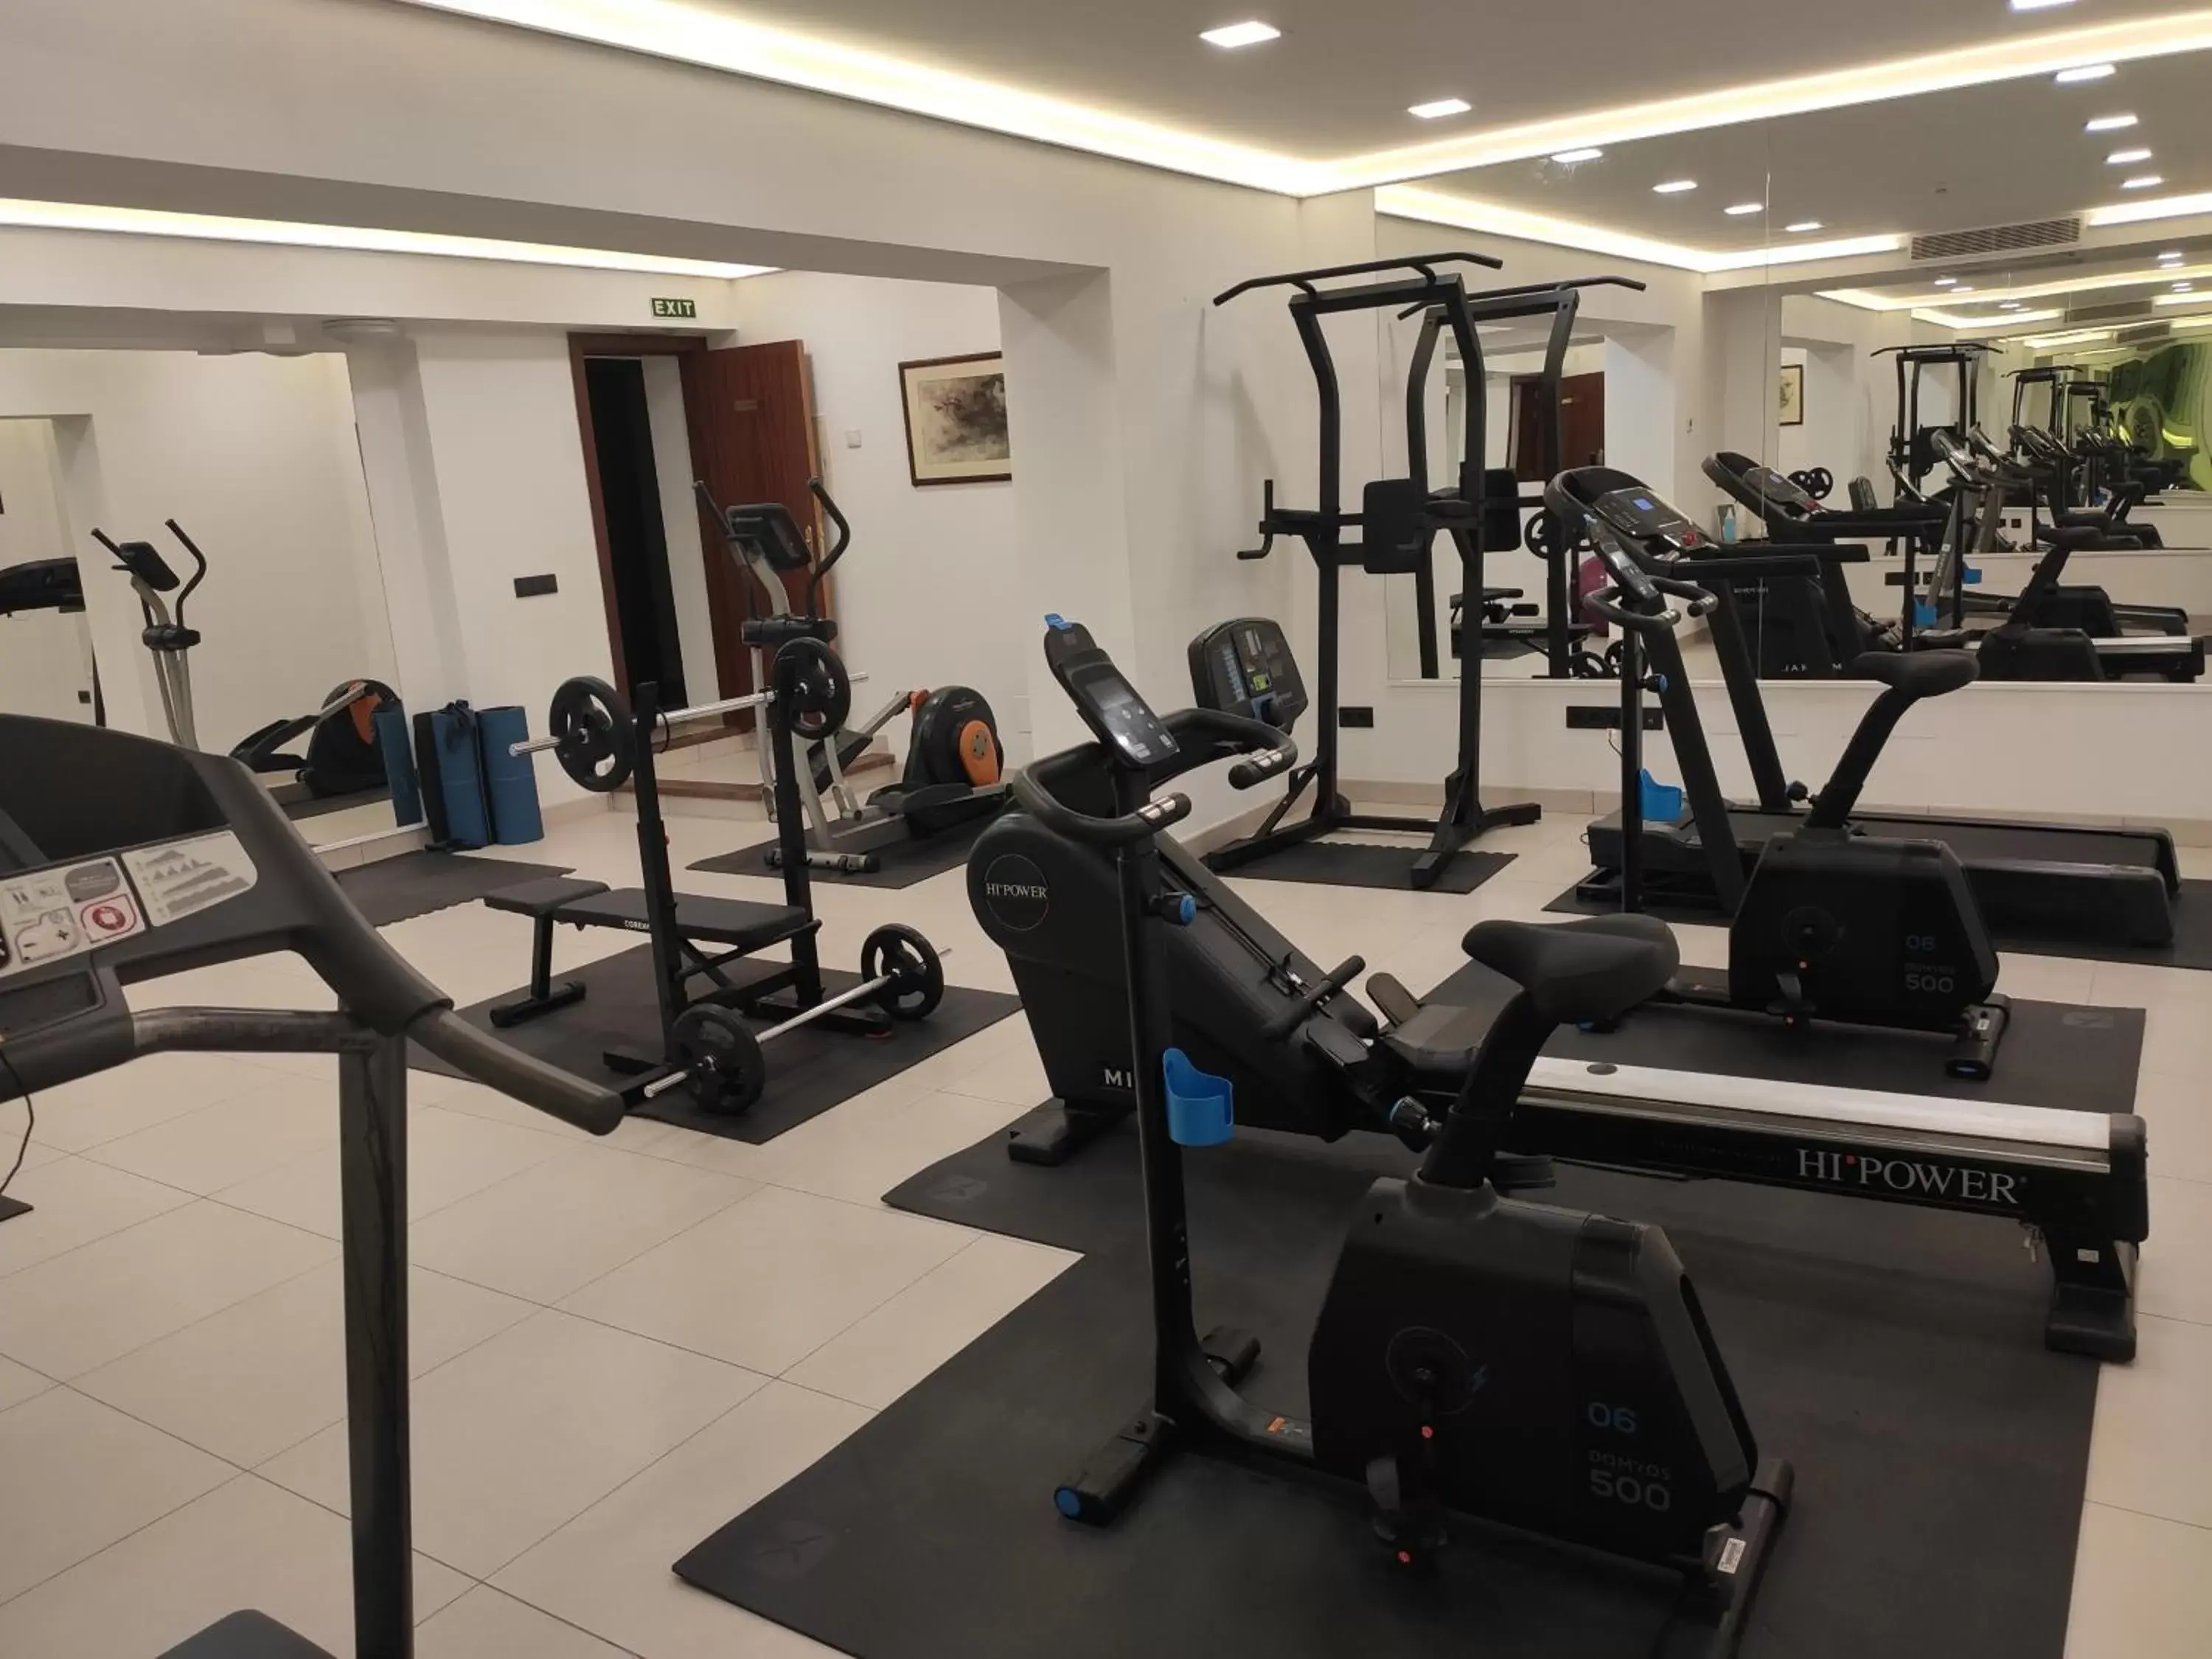 Fitness centre/facilities, Fitness Center/Facilities in Hotel Mirador